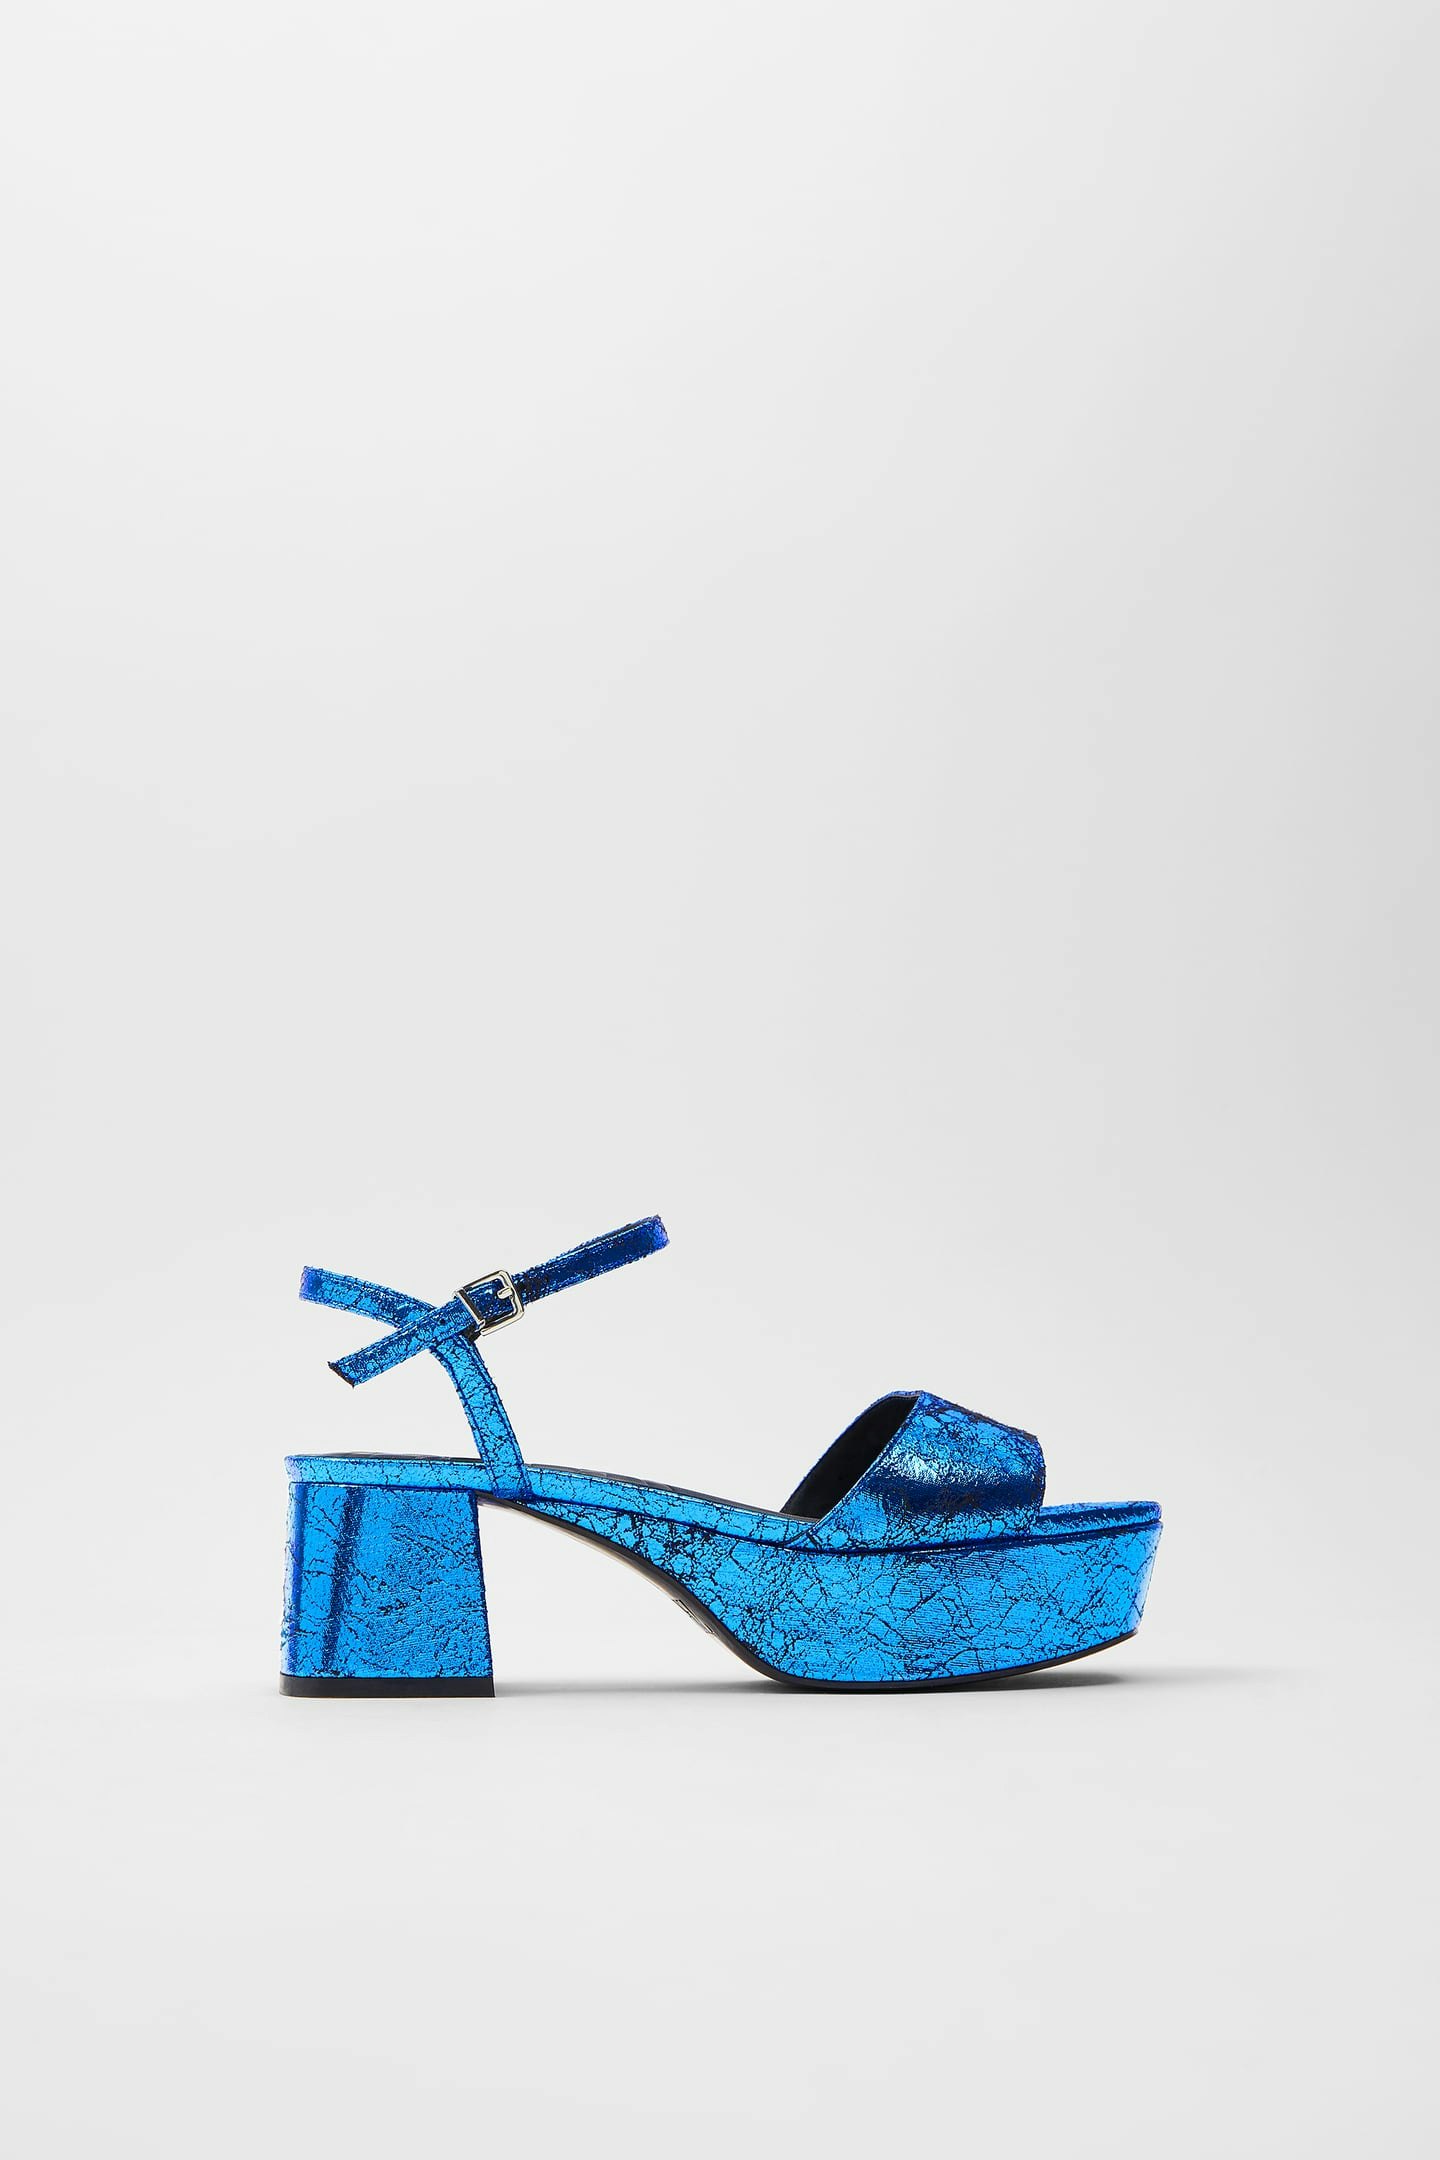 zara blue sandals